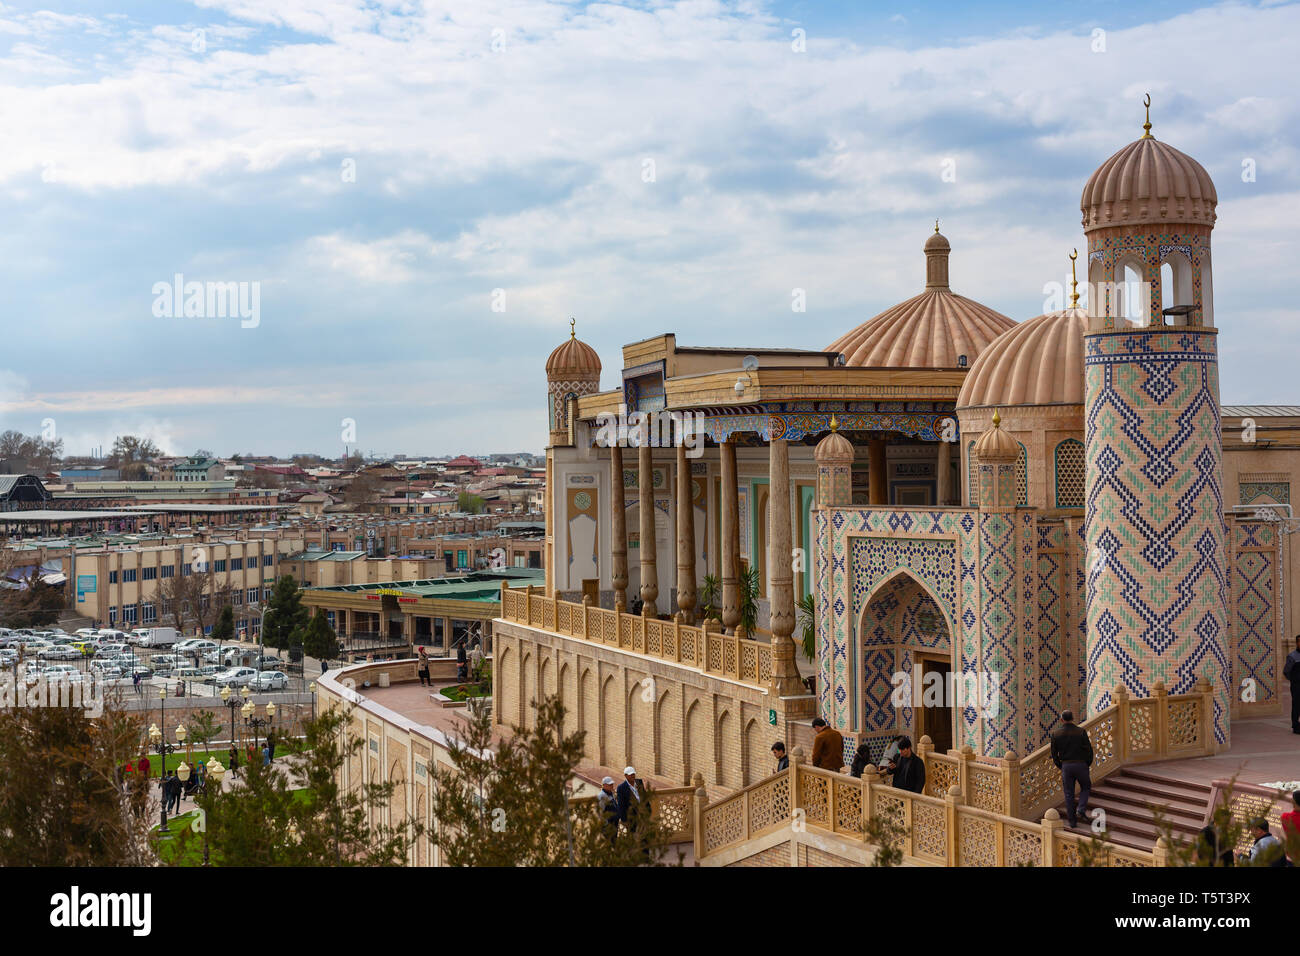 Fantastische orientalische Architektur der alten Stadt Samarkand, Usbekistan. Stockfoto